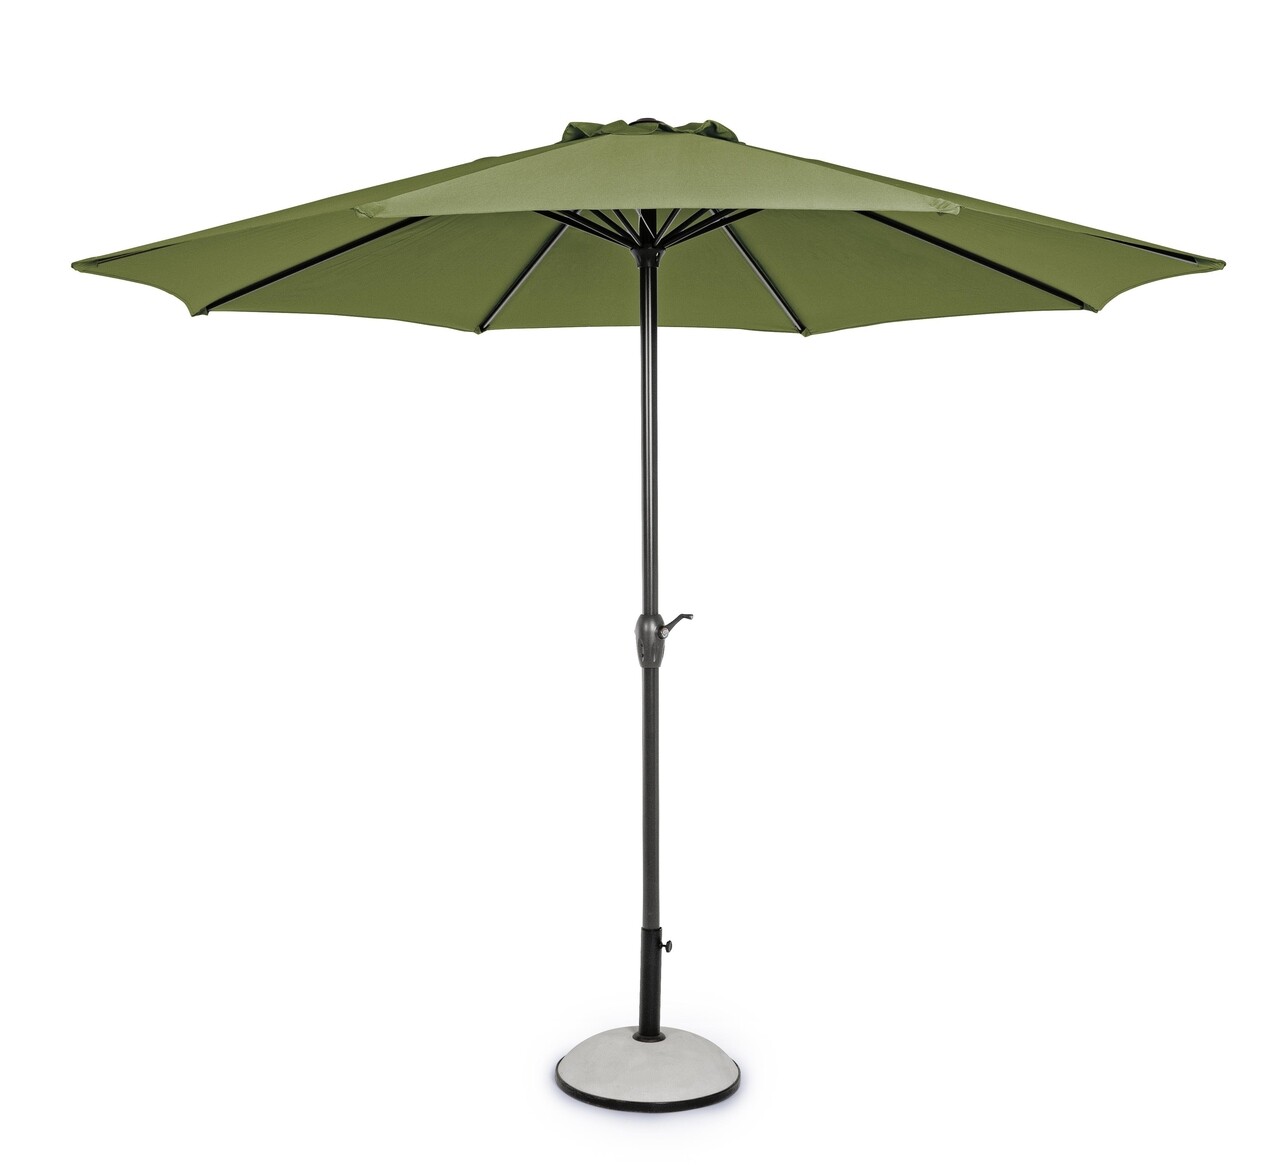 Kalife Terasz/kerti napernyő, Bizzotto, Ø300 cm, oszlop Ø46/48 mm, alumínium/poliészter, zöld